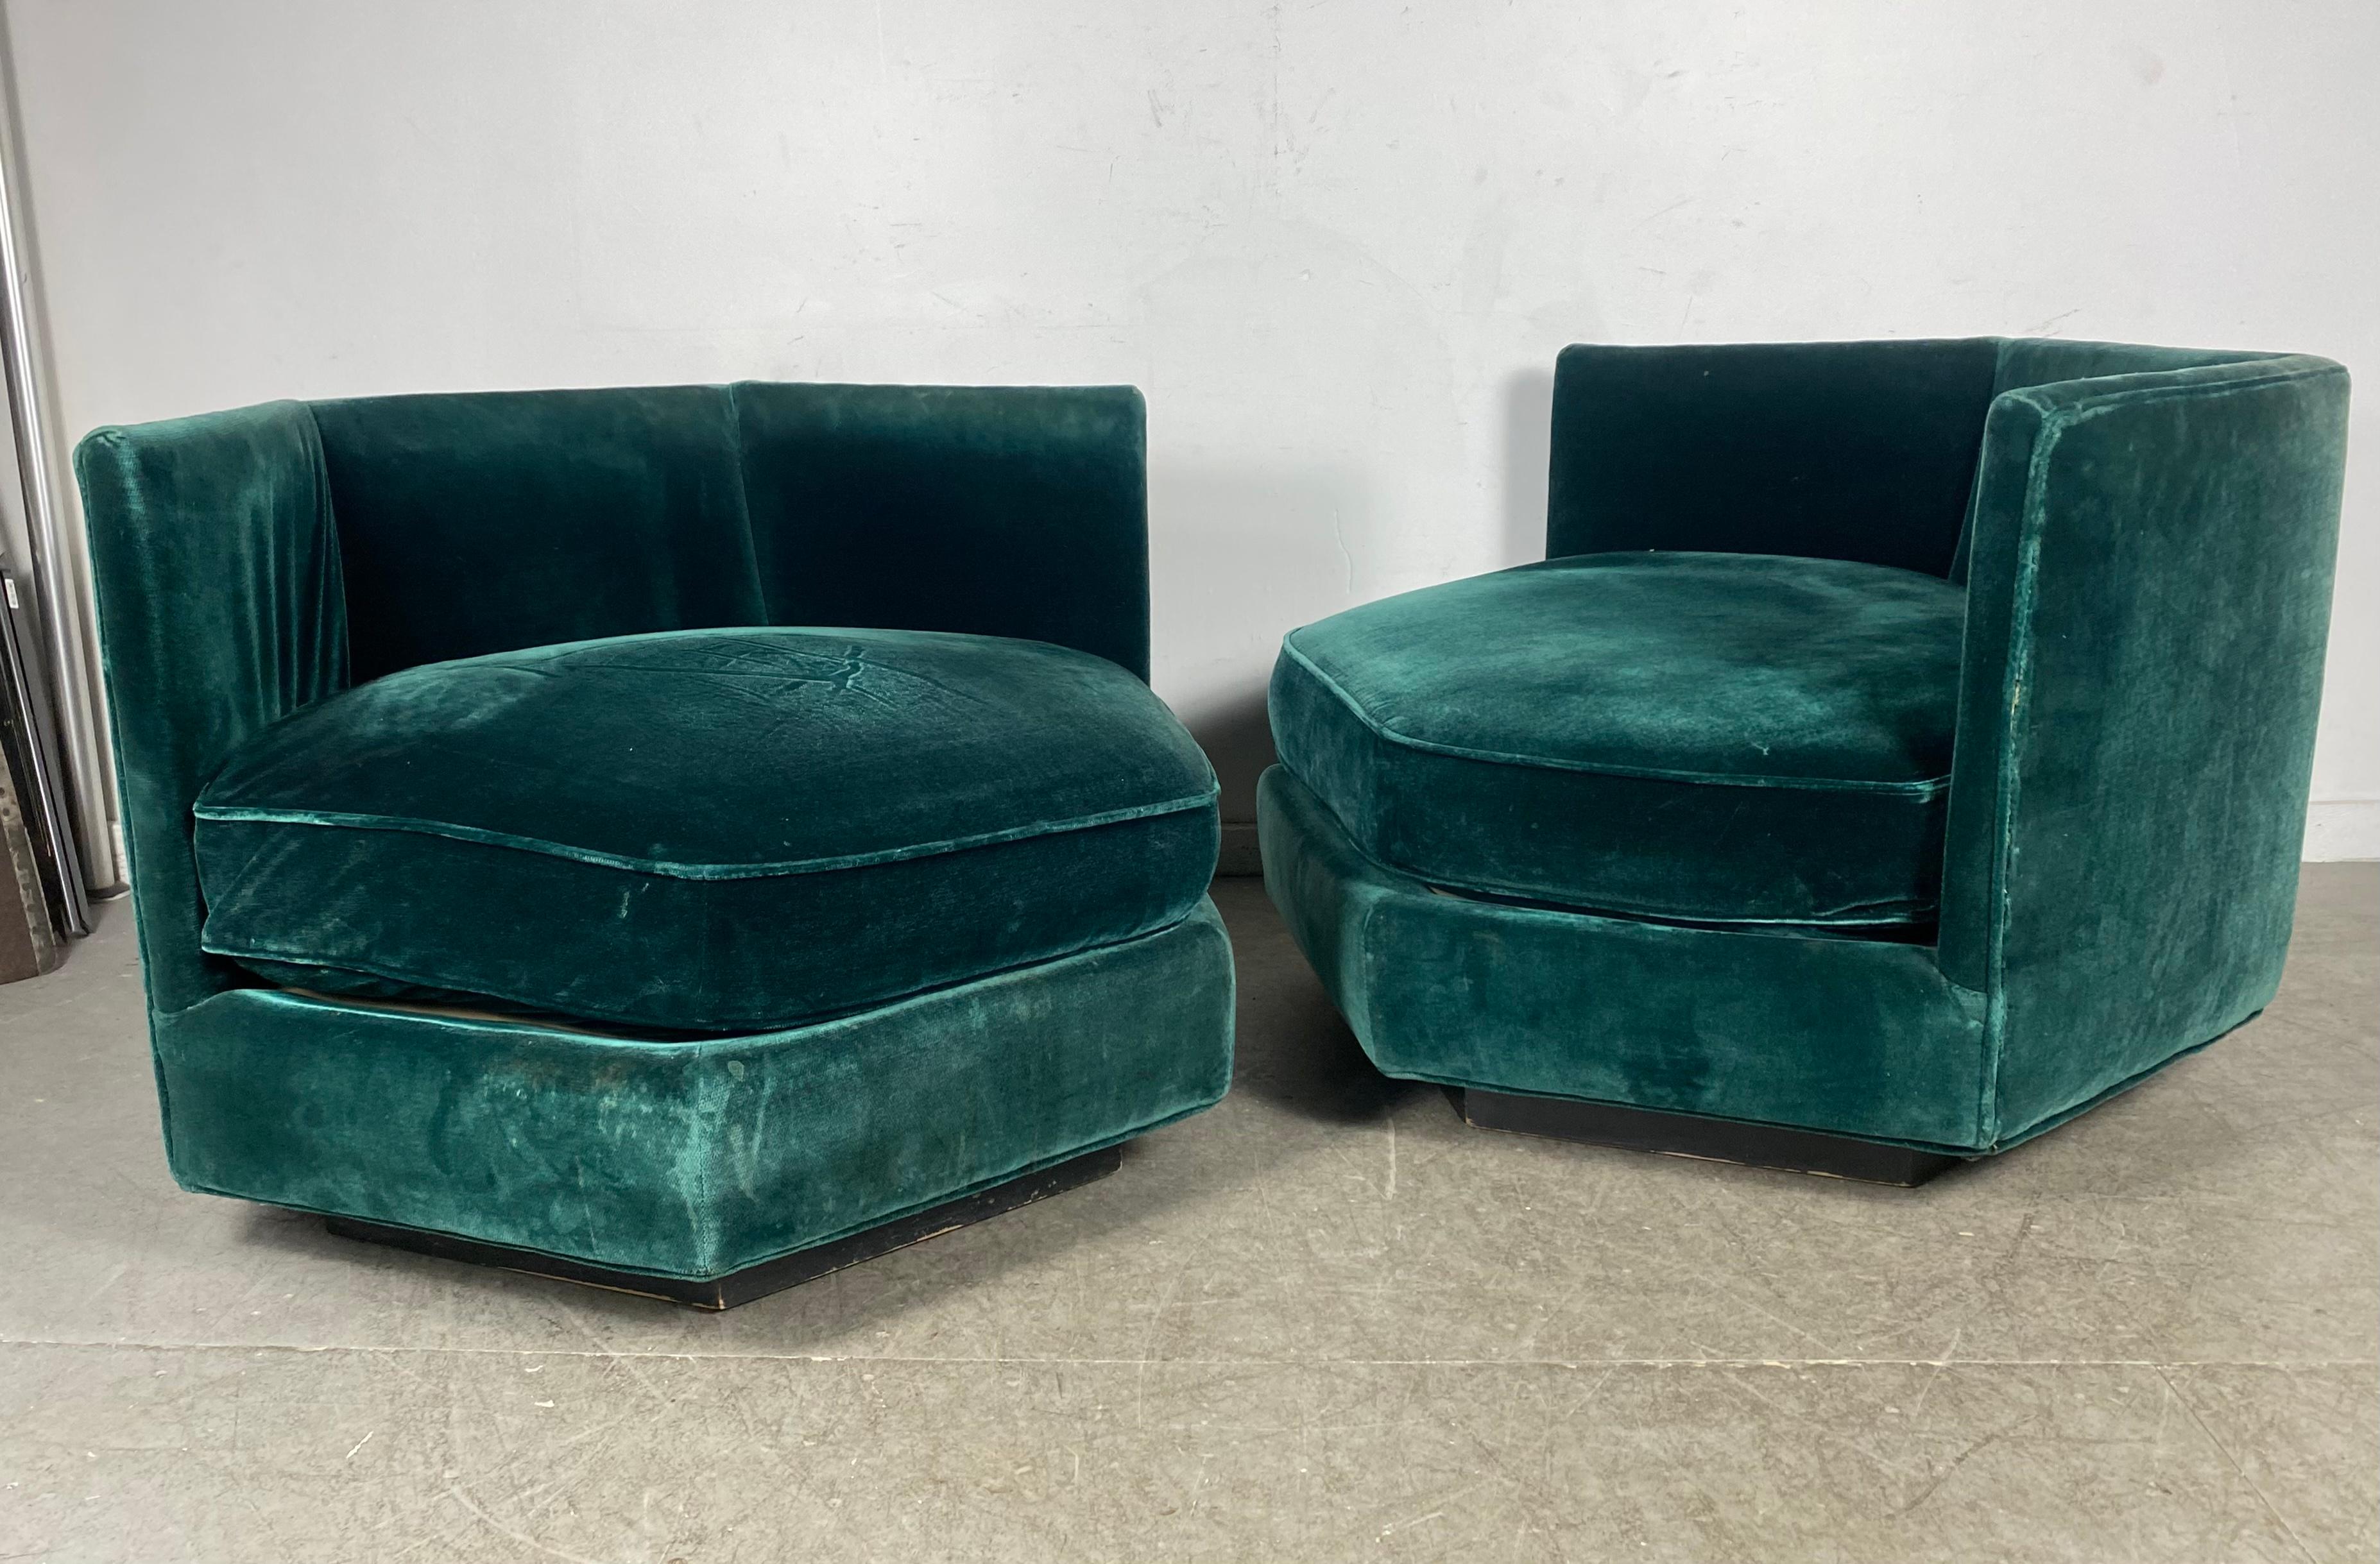 Fin du 20e siècle Paire assortie de fauteuils de salon Hex en mohair vert émeraude Bernhardt des années 1970 en vente